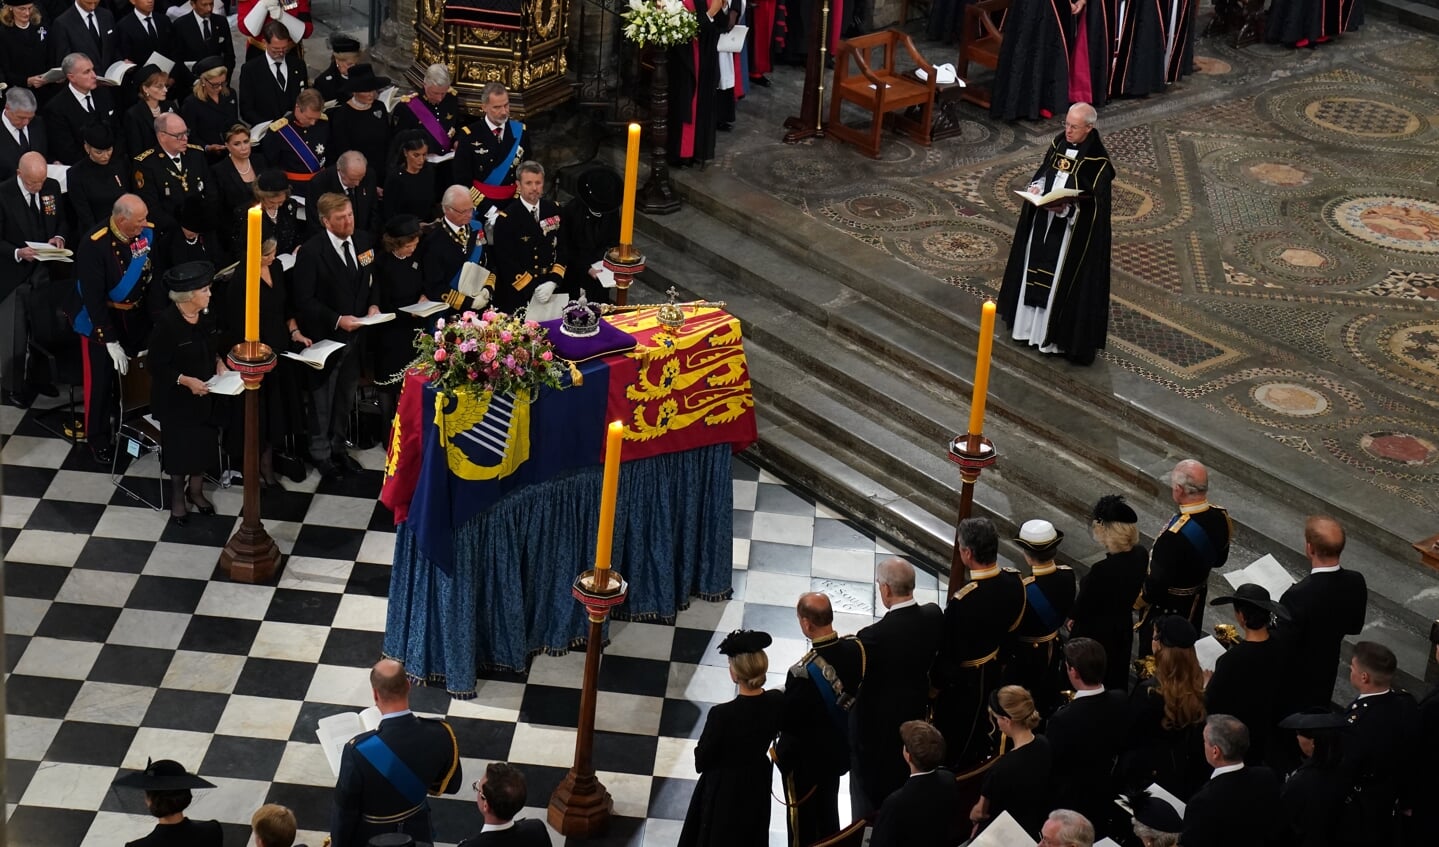 Rond de dienst bij de begrafenis van de Britse koningin Elizabeth was er veel aandacht voor de Anglicaanse Kerk.